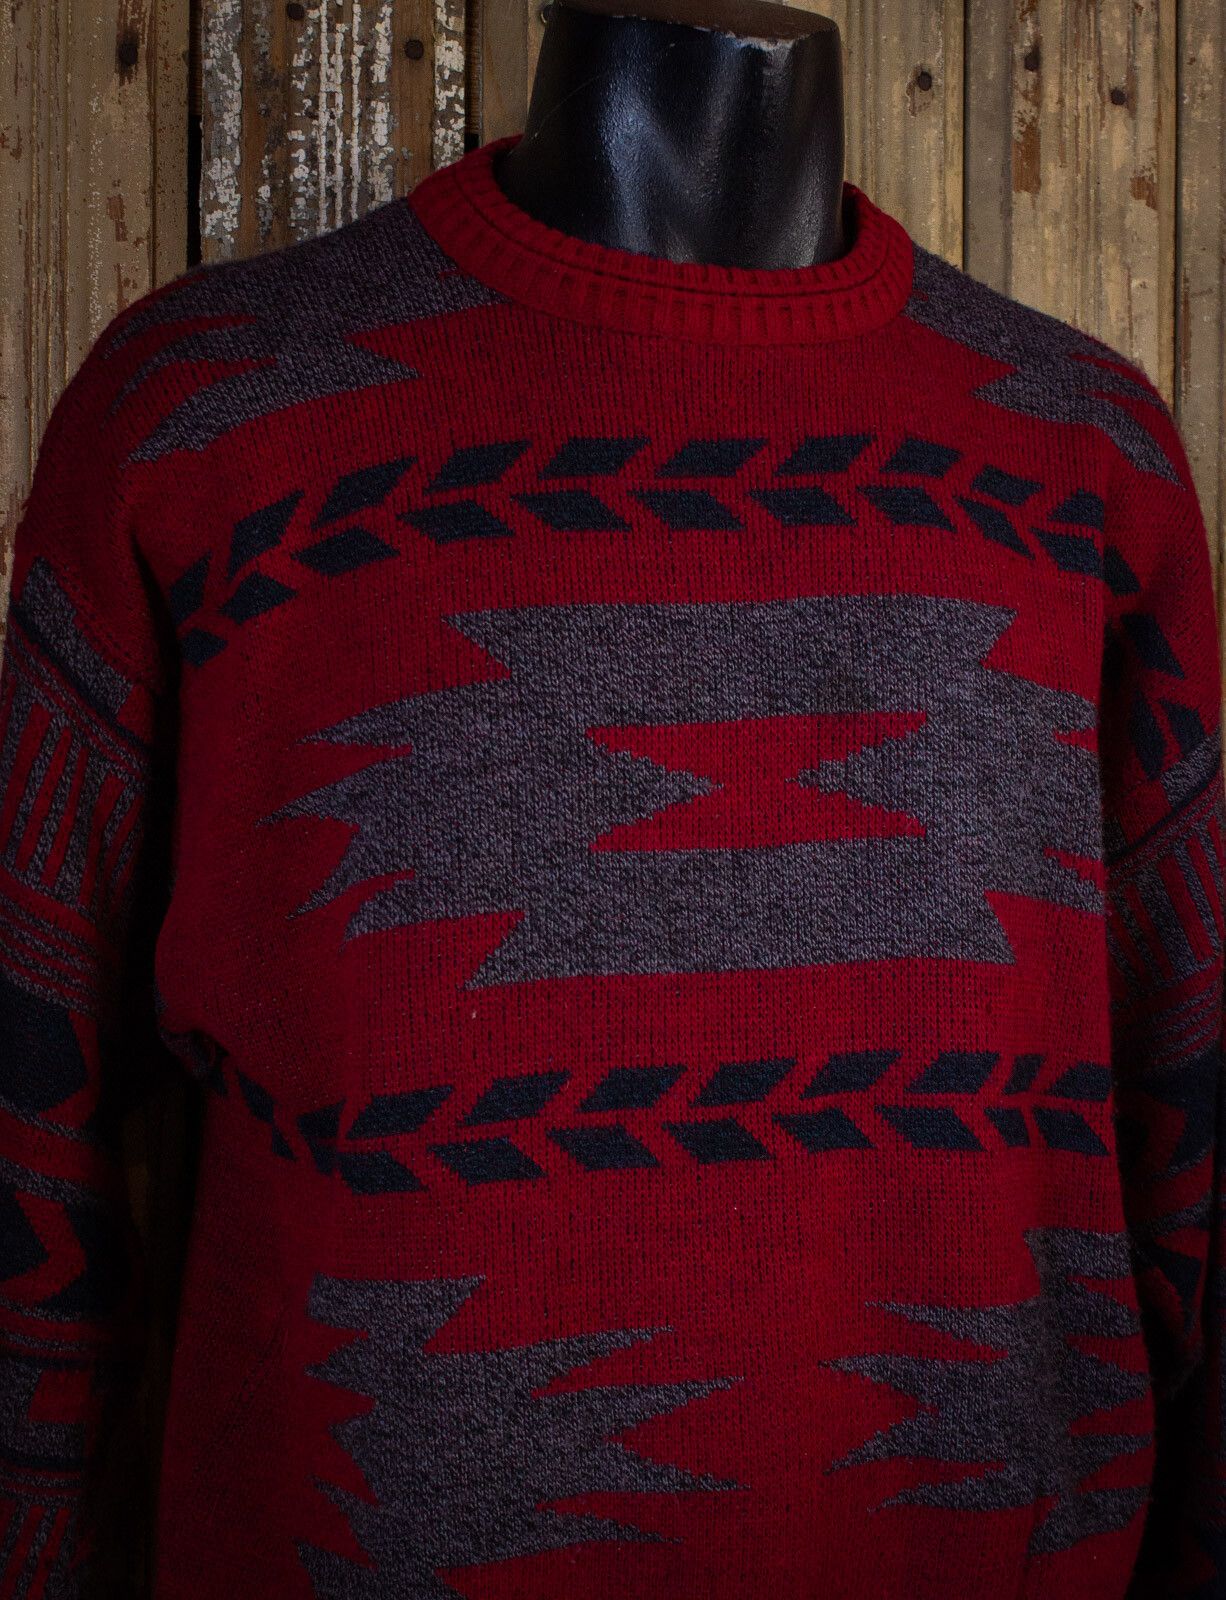 Vintage Vintage Daniel Axel Aztec Print Knit Sweater 80s Red Large Size US L / EU 52-54 / 3 - 4 Preview